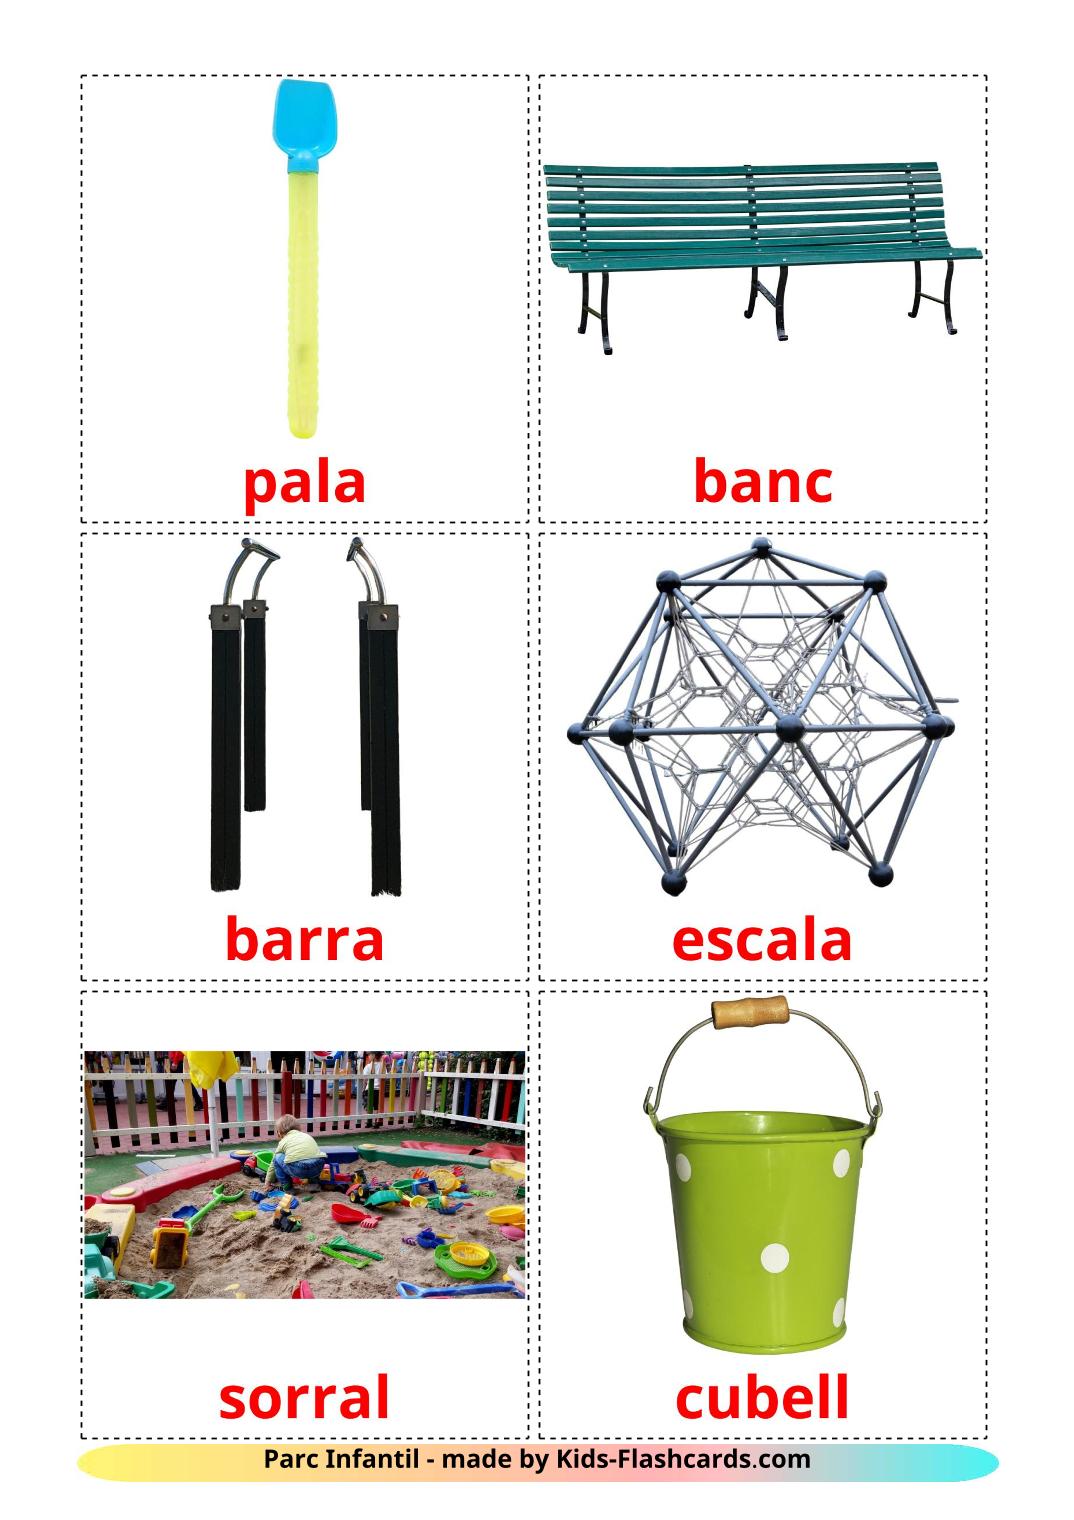 Parque Infantil - 13 Flashcards catalãoes gratuitos para impressão